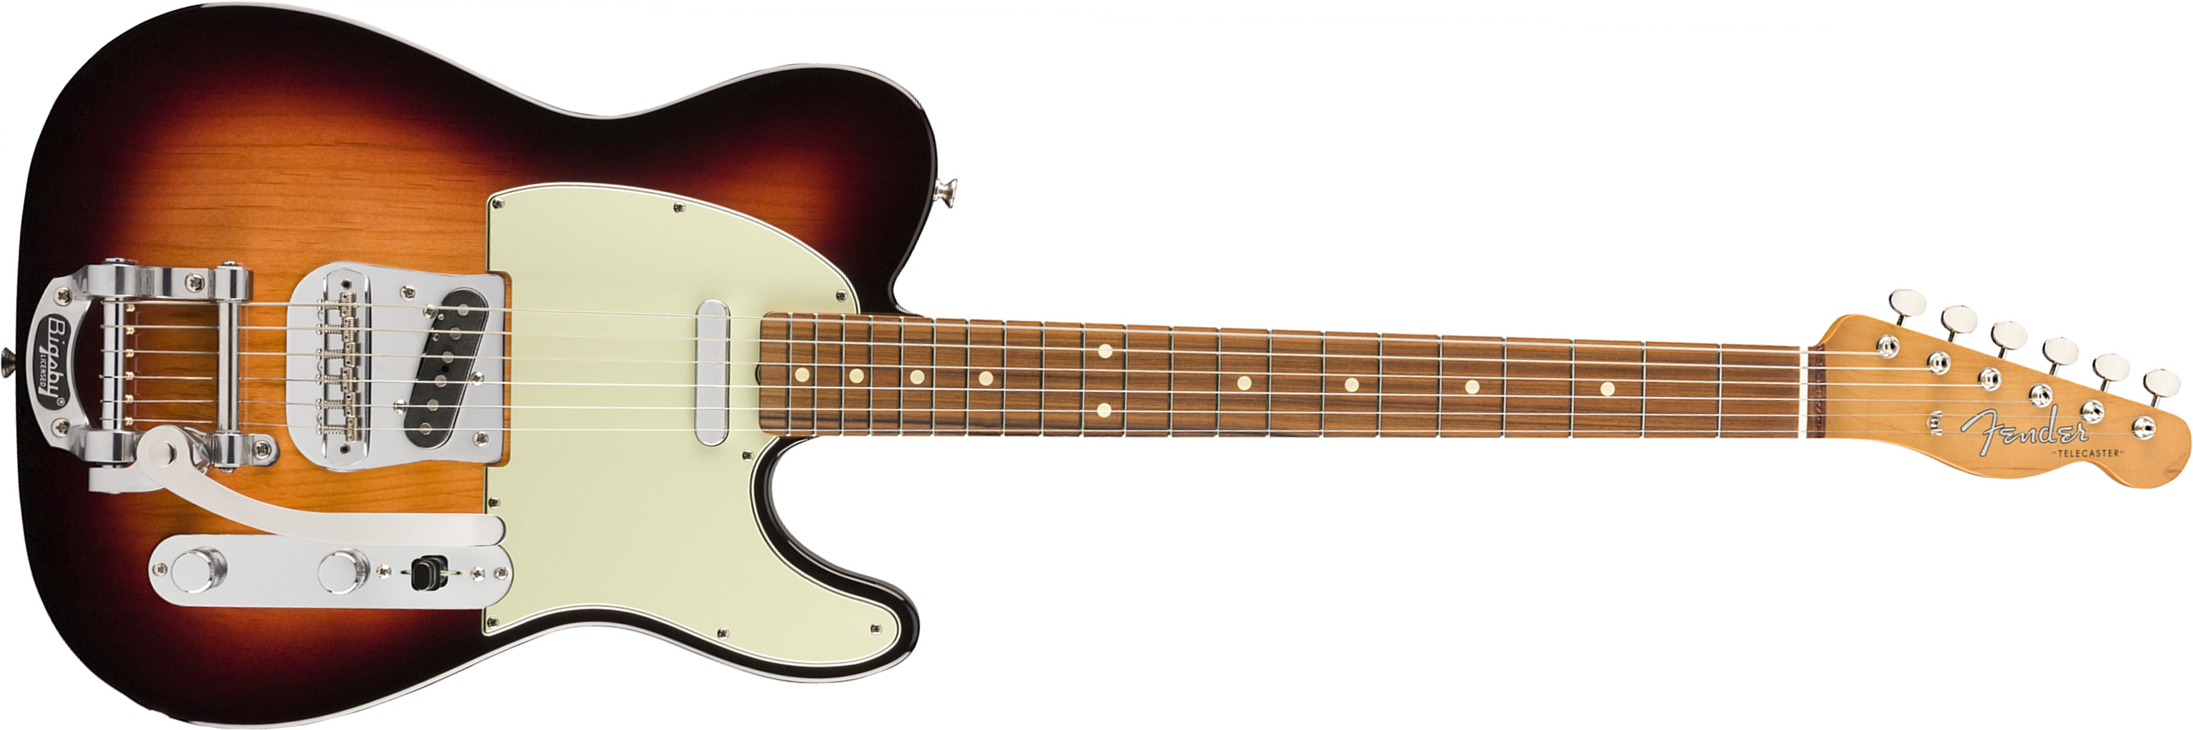 Fender Tele 60s Bigsby Vintera Vintage Mex Pf - 3-color Sunburst - Tel shape electric guitar - Main picture